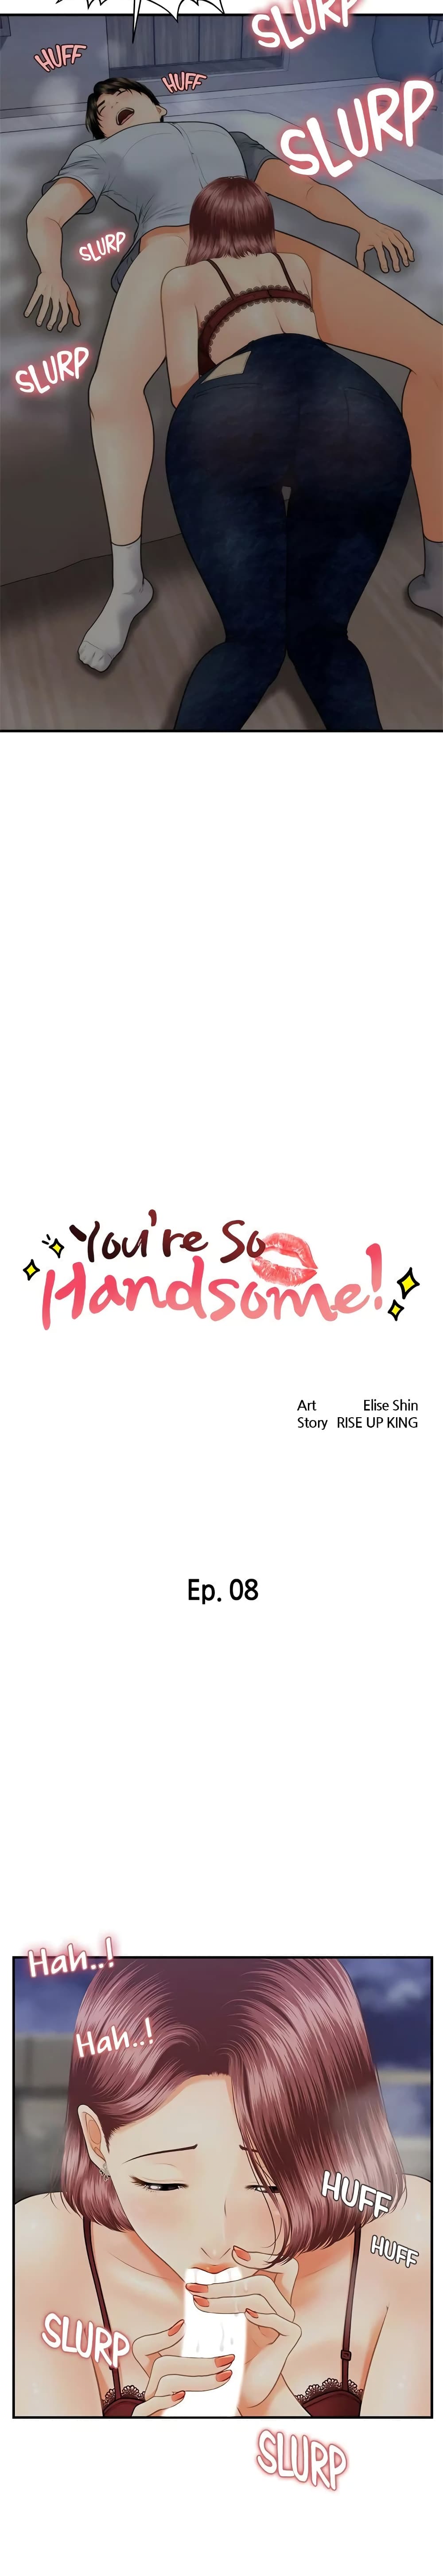 Hey, Handsome